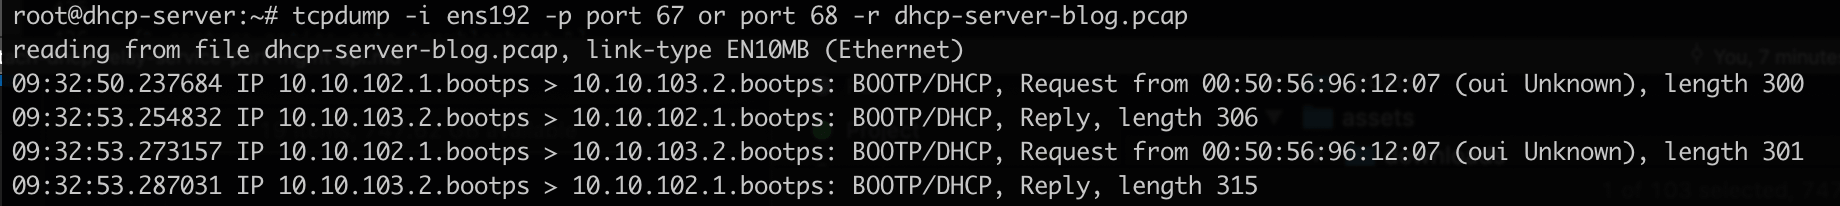 DHCP Server Capture